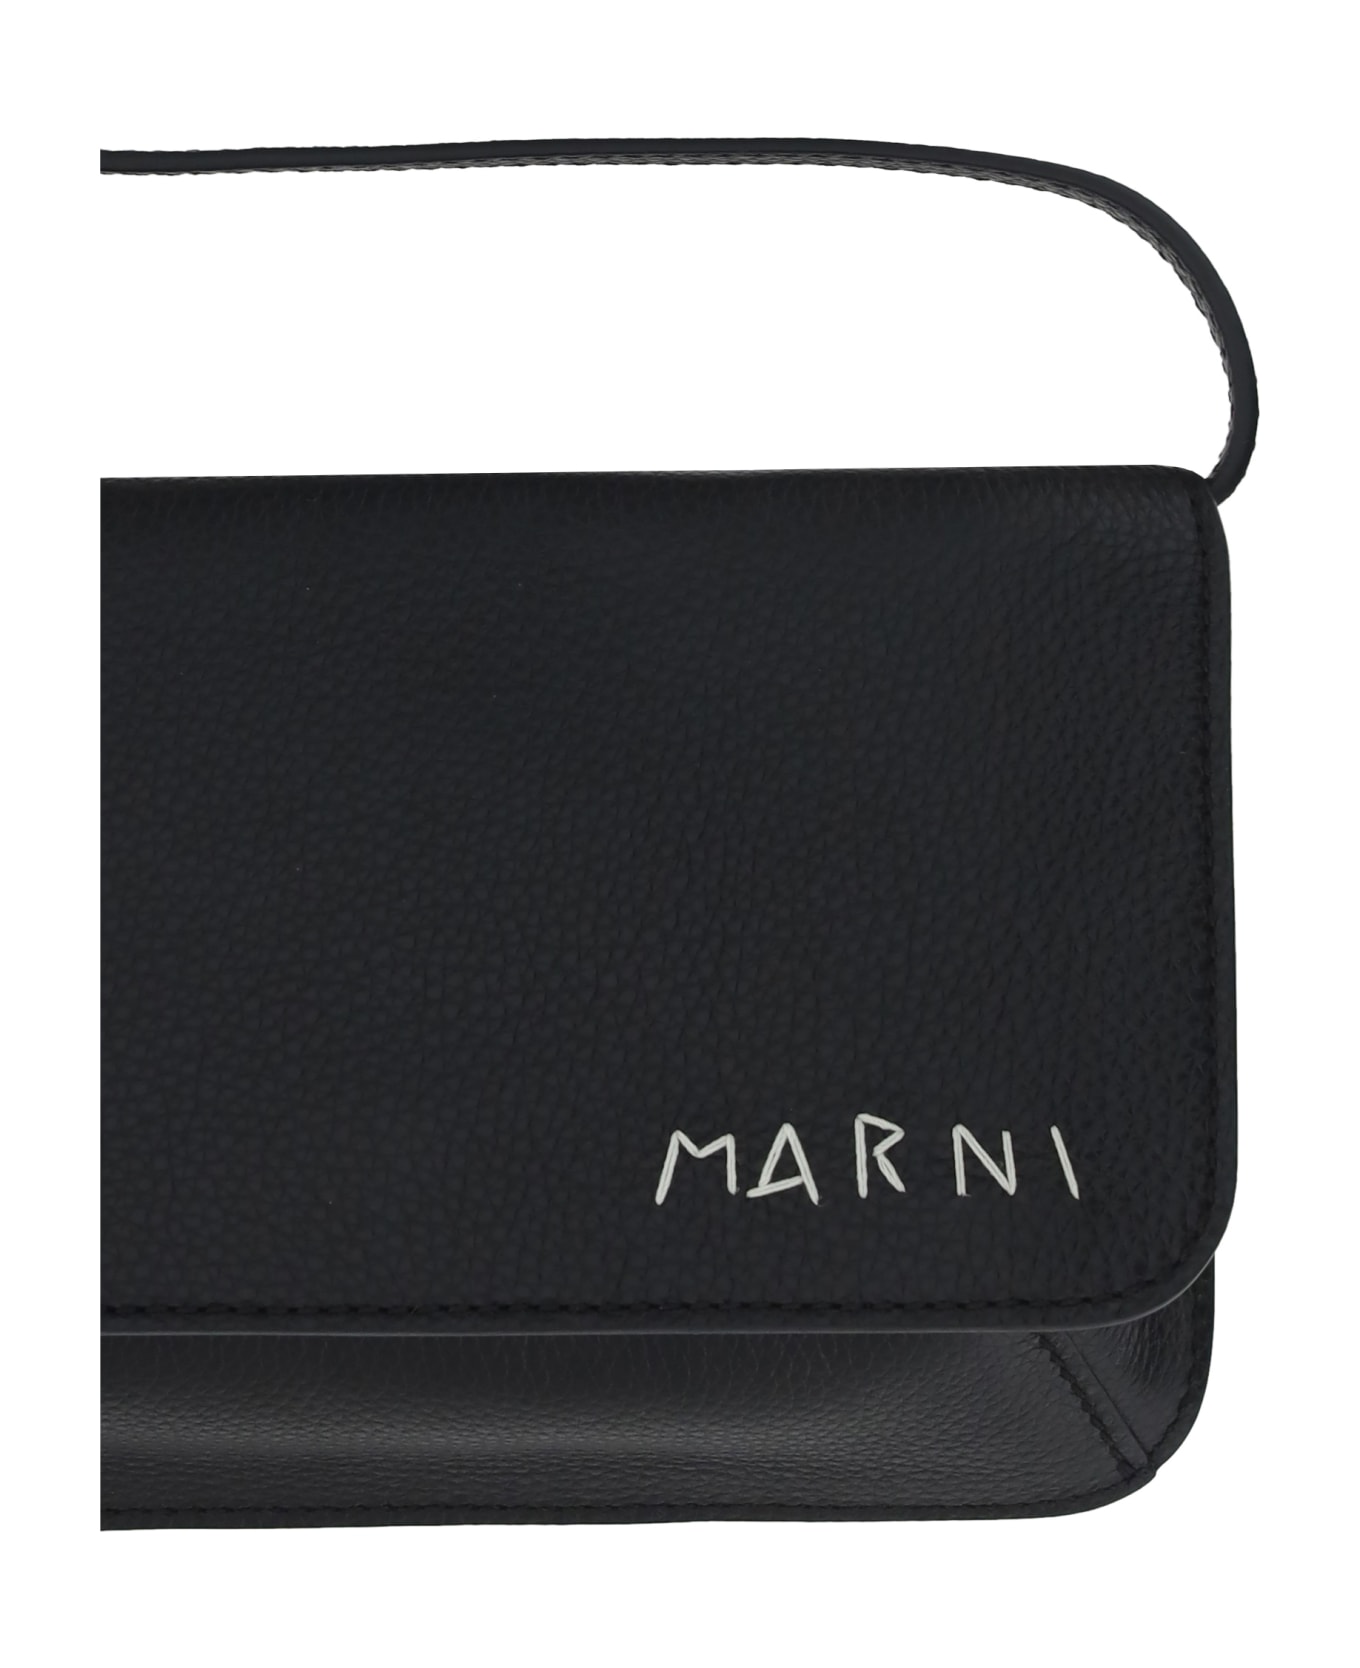 Marni Flap Trunk Shoulder Bag - Black